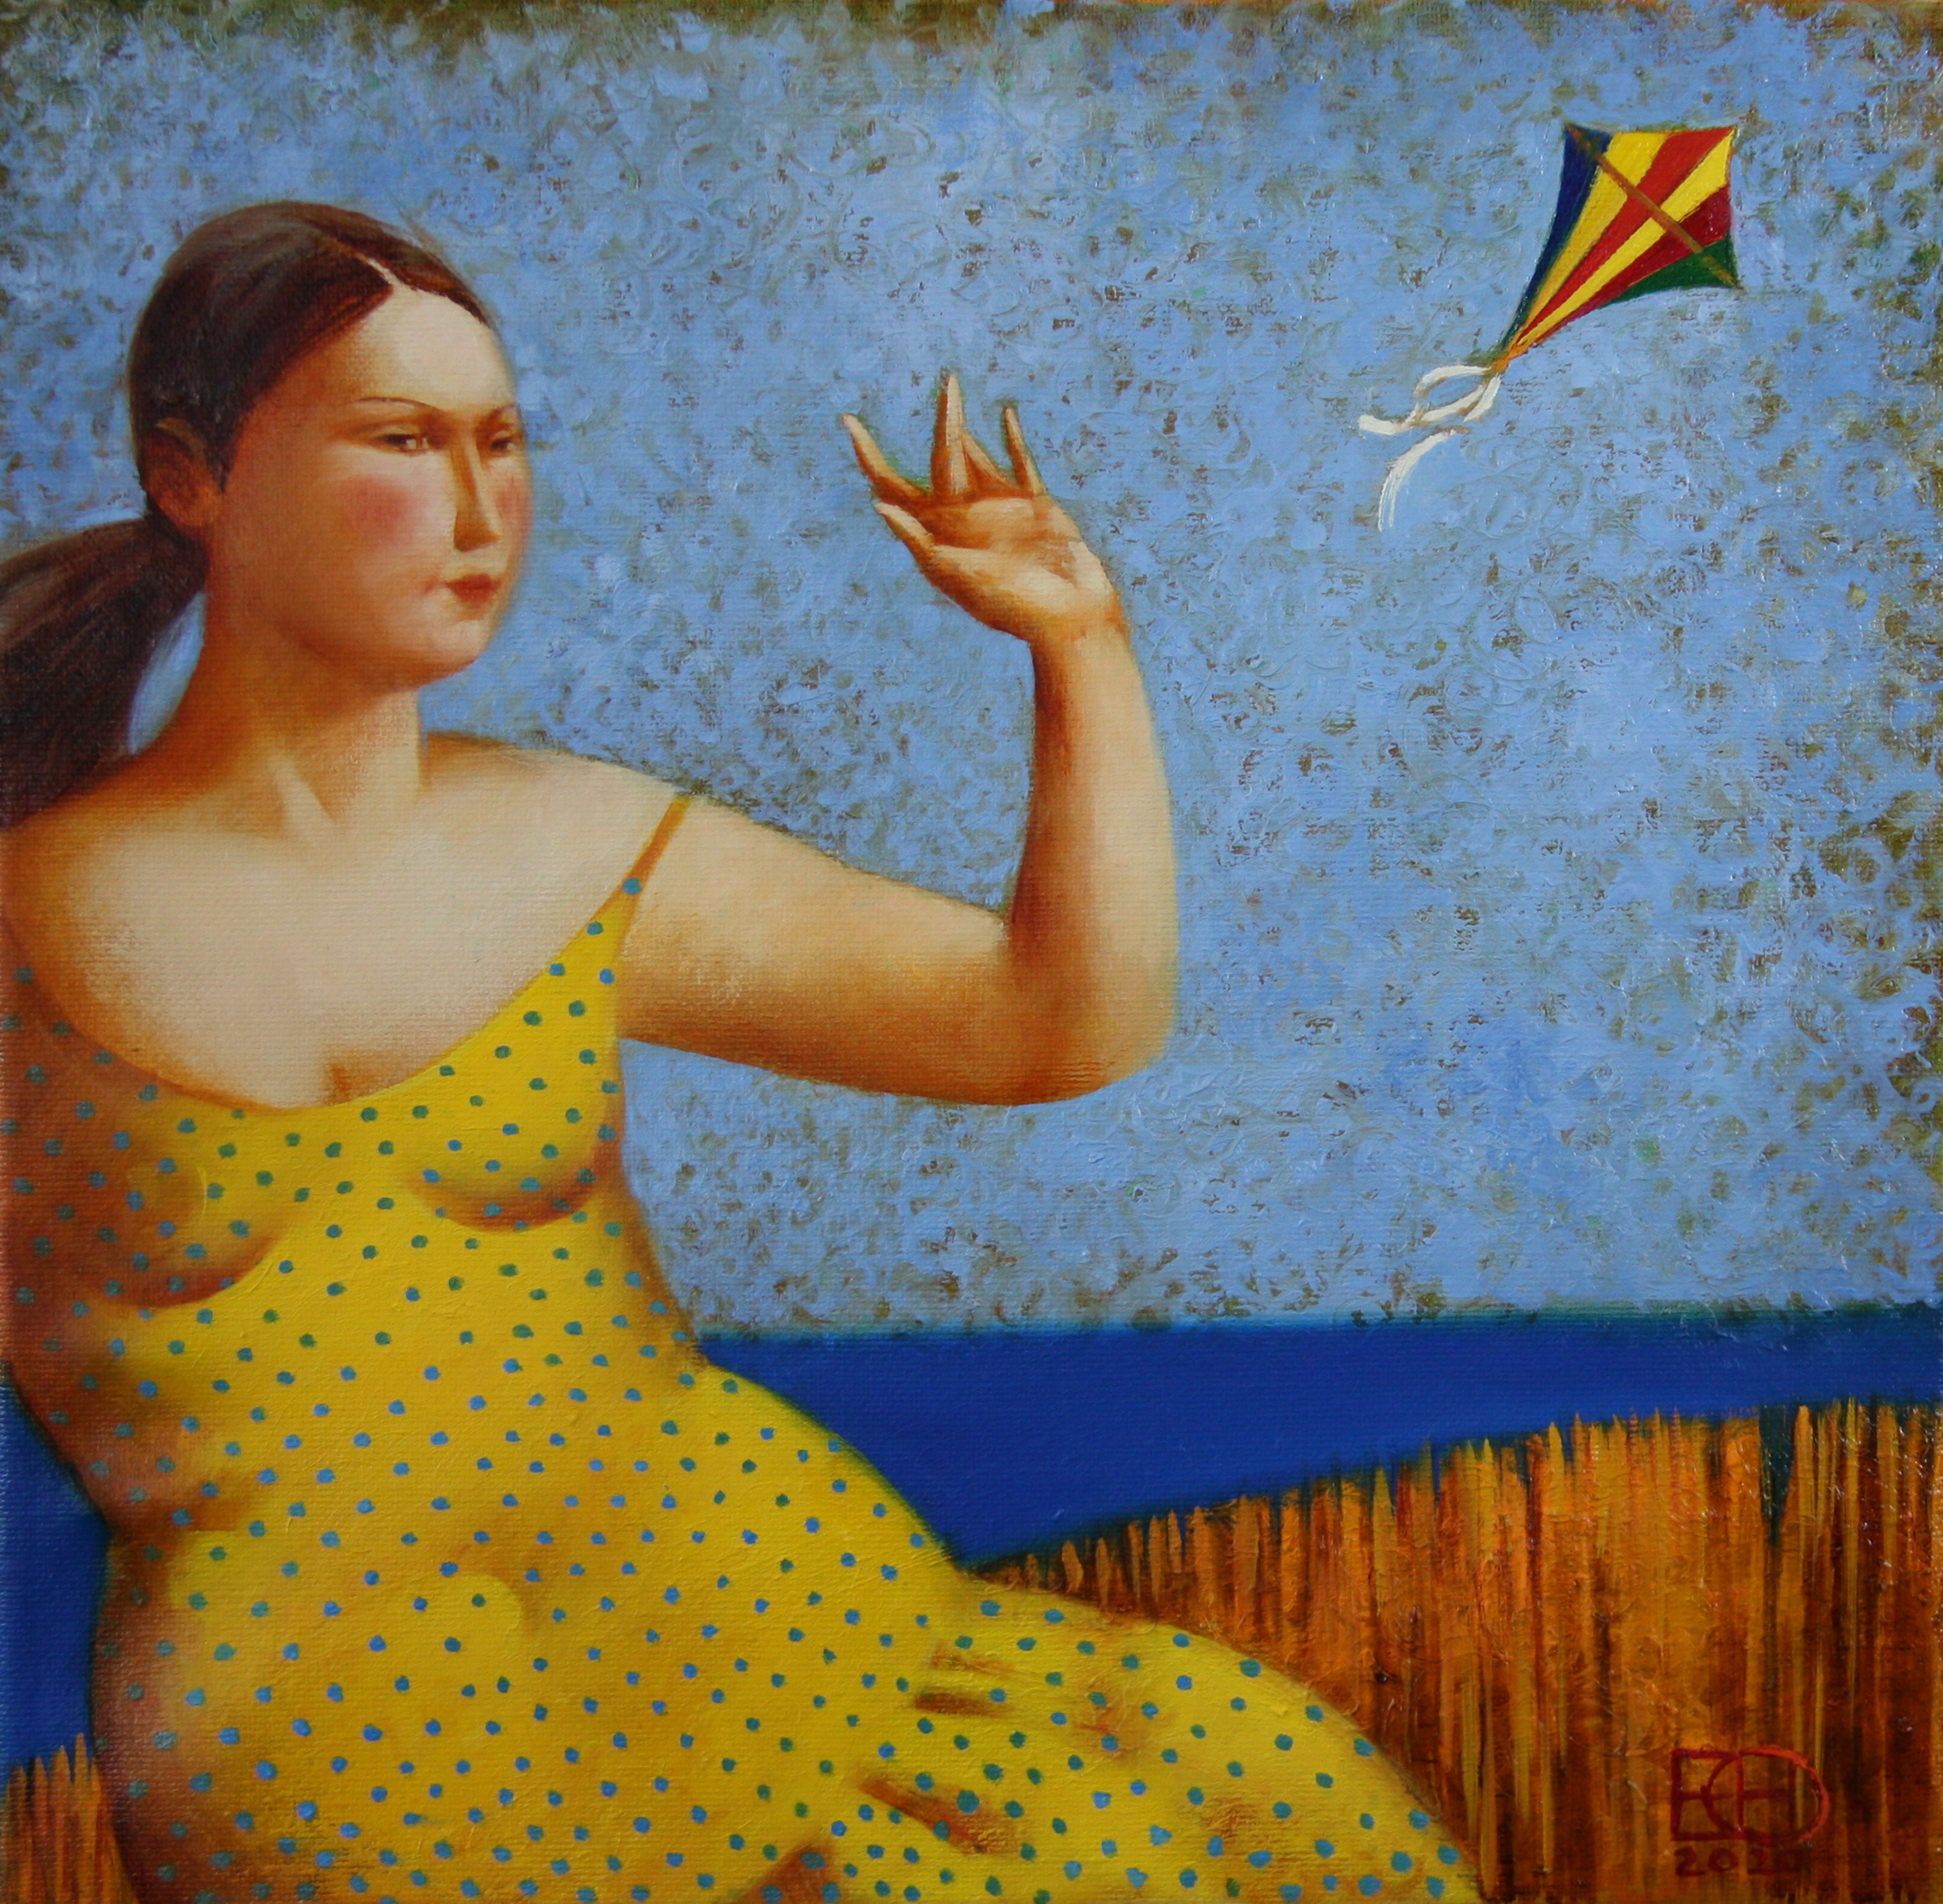 Goodbye, Dream - 1, Nadezhda Egorova, Buy the painting Oil